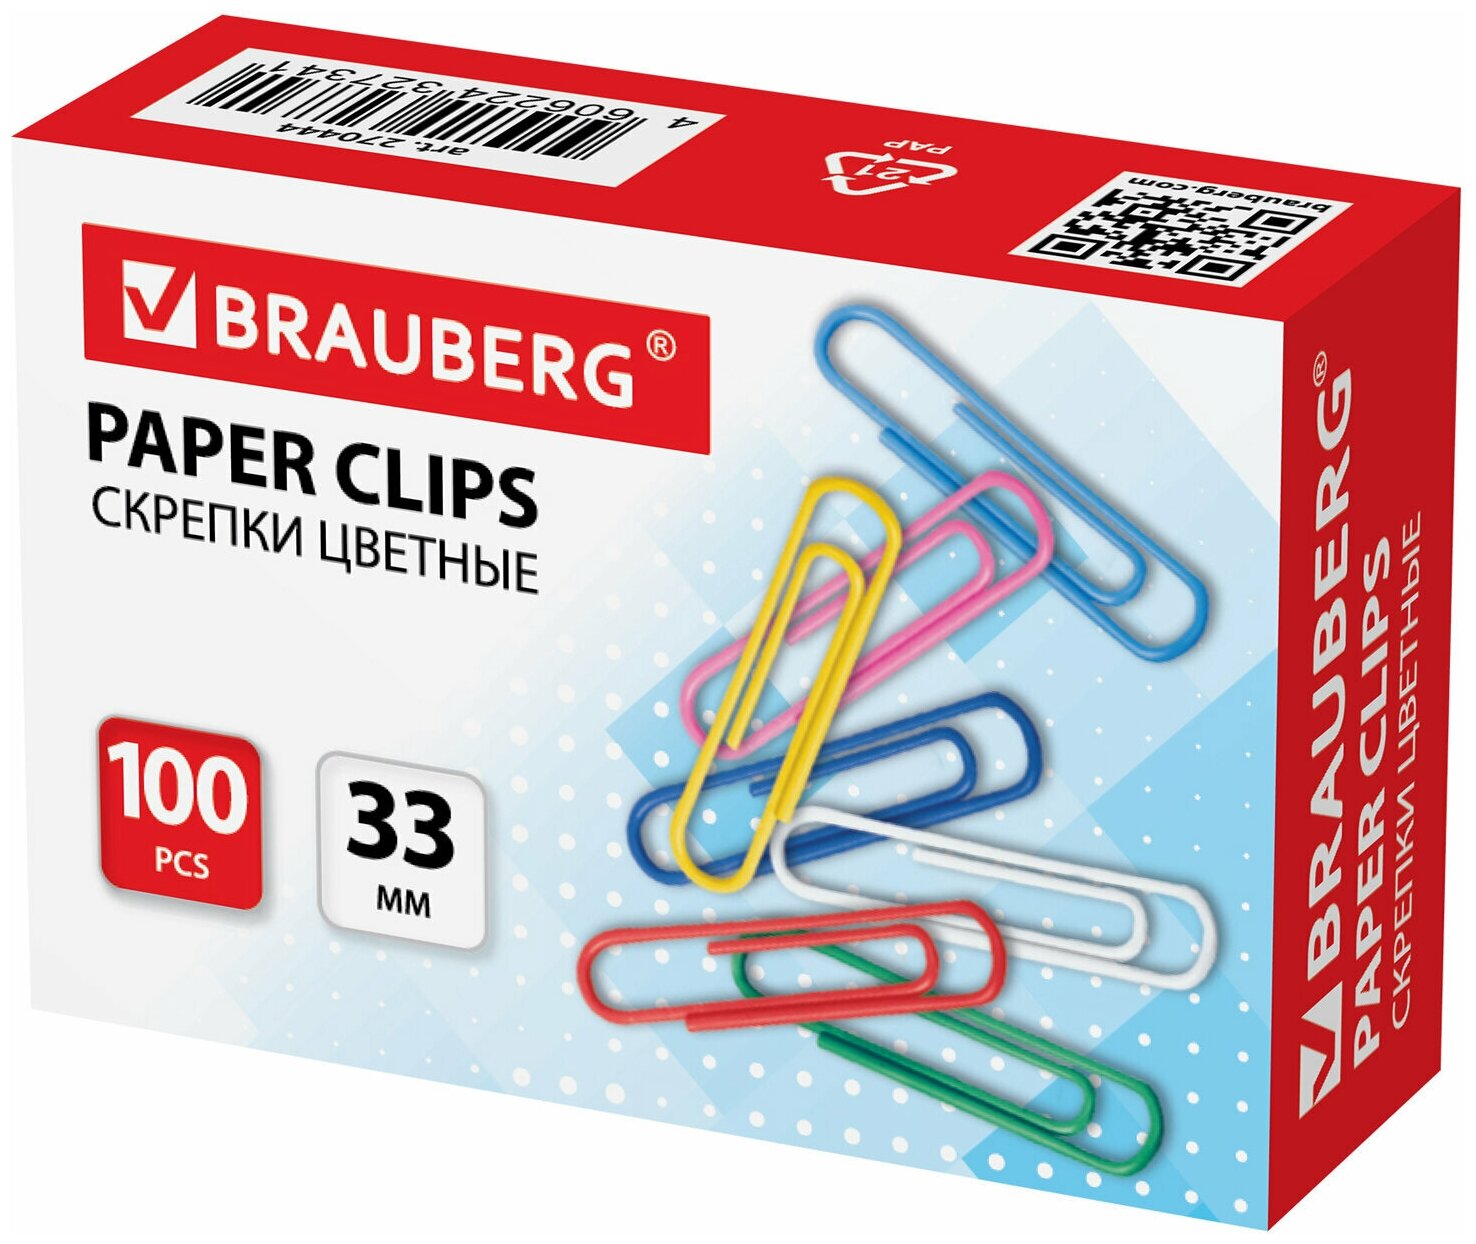 Скрепки BRAUBERG, 33 мм, цветные, 100 шт, в картонной коробке, 270444